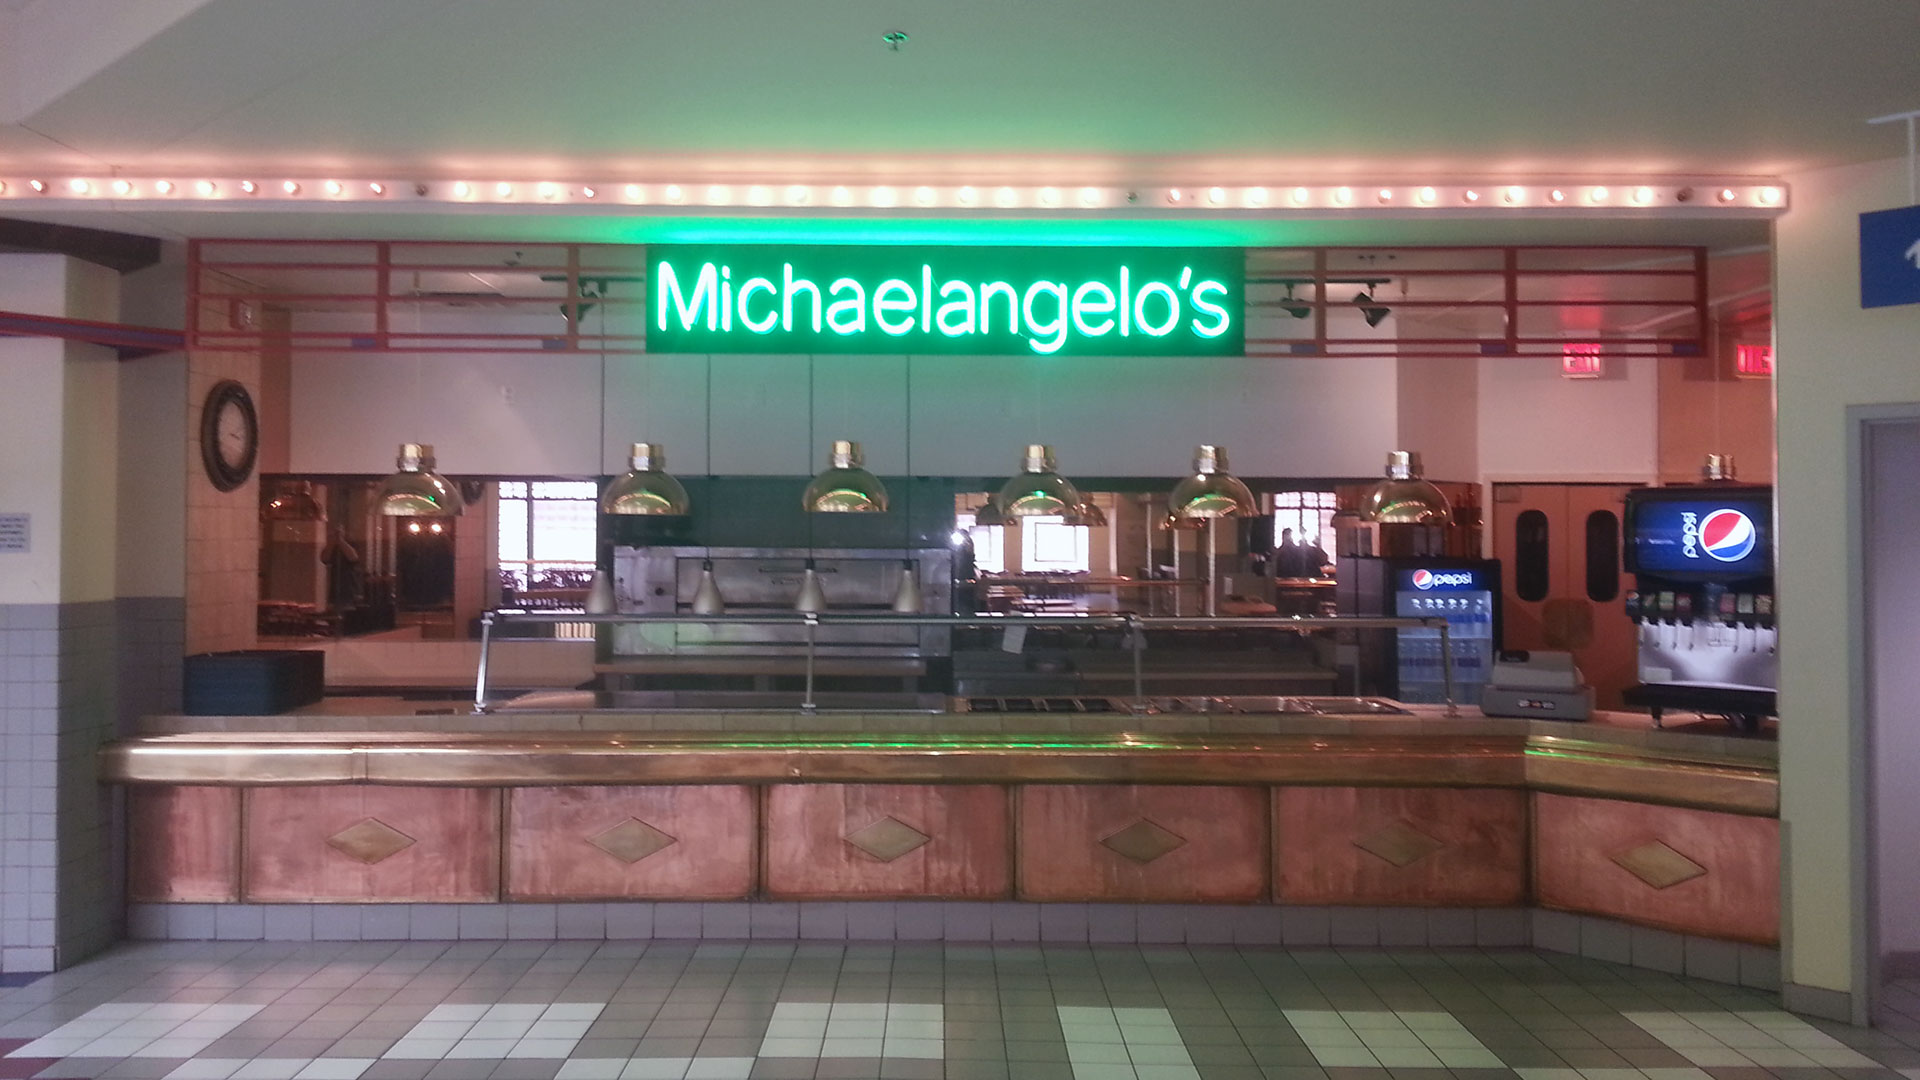 Michaelangelo's Neon Sign